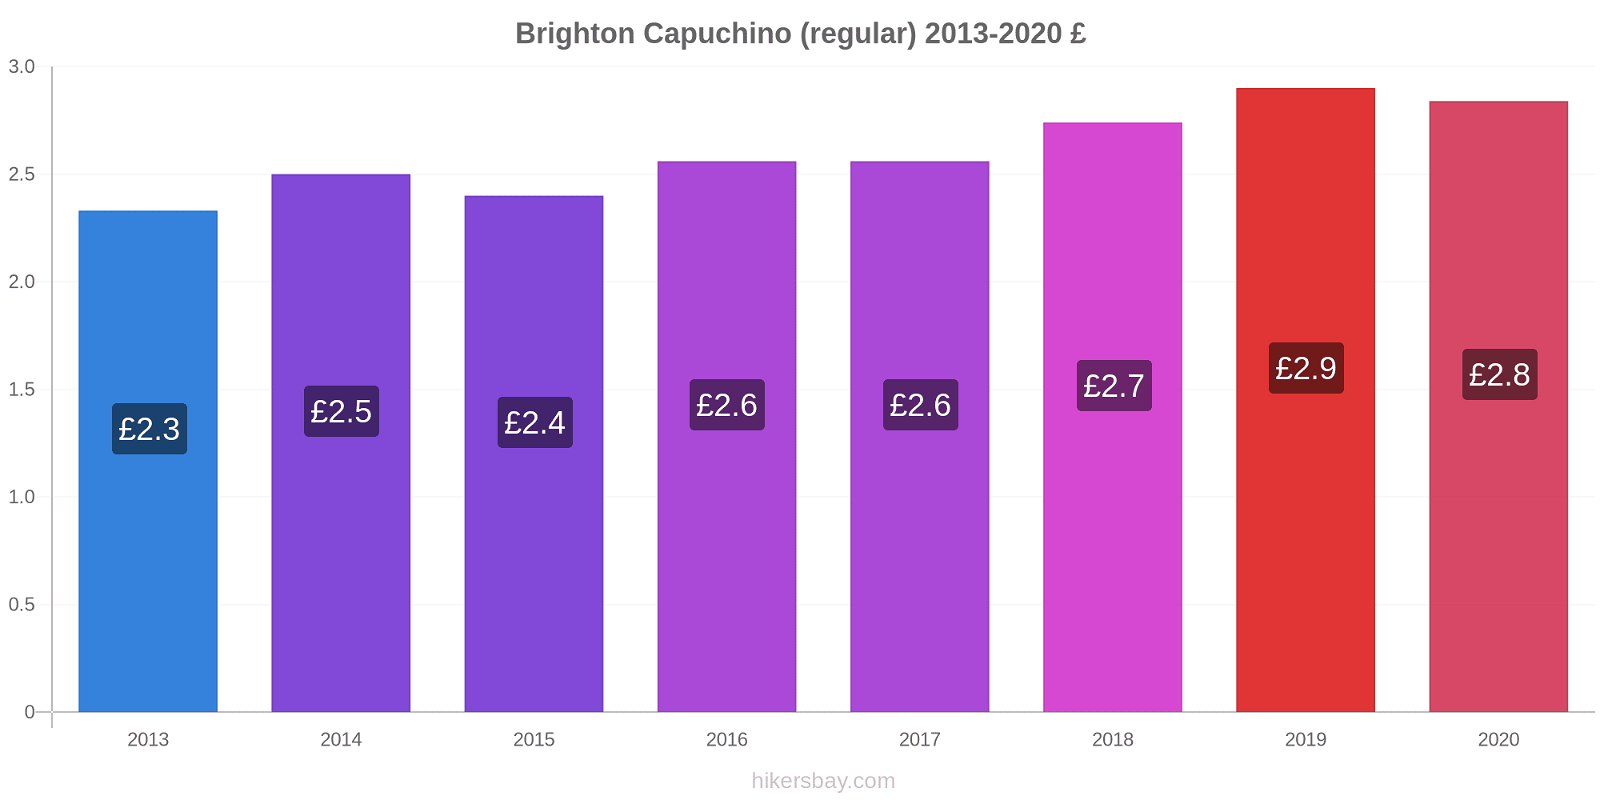 Brighton cambios de precios Capuchino (regular) hikersbay.com